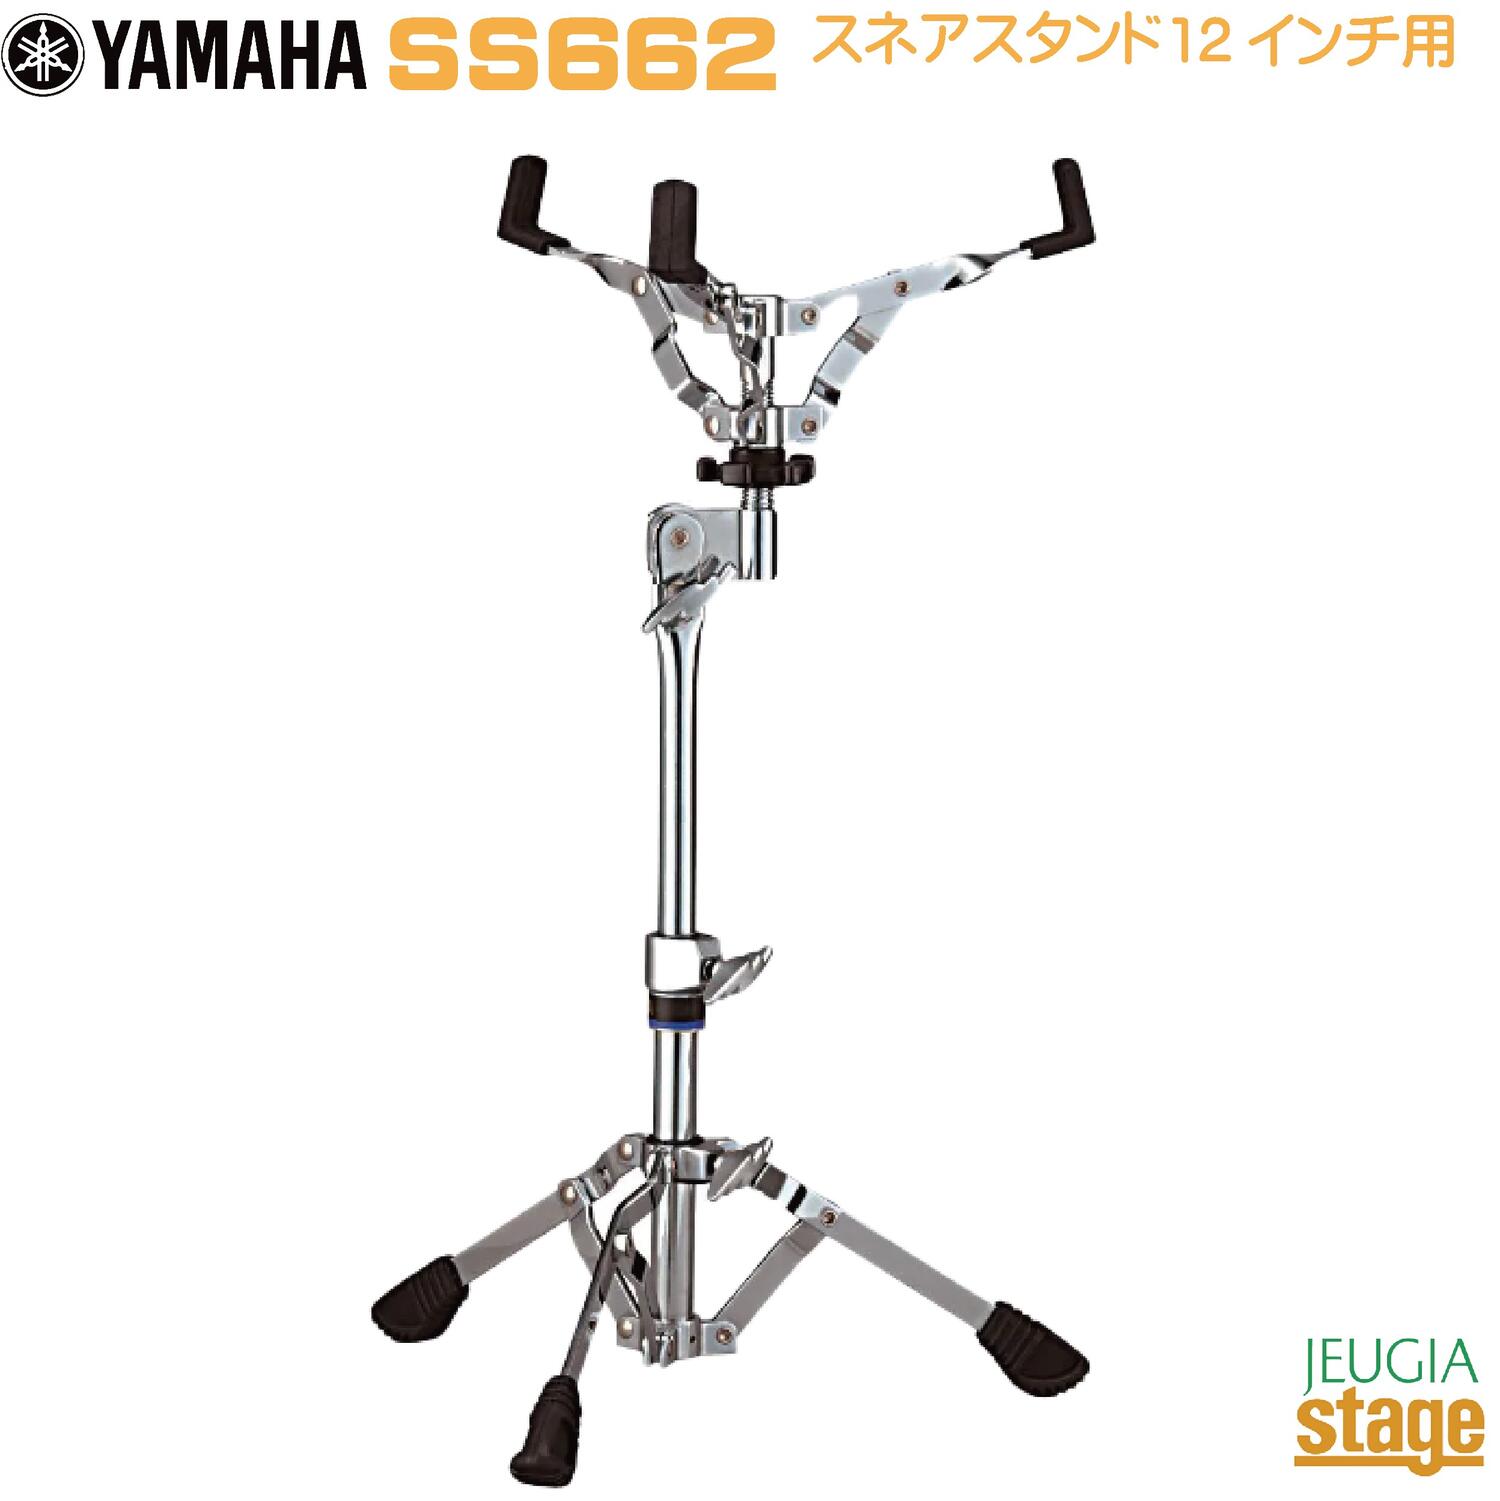 YAMAHA SS662 Snare Stand 12 ヤマハ スネアスタンド 12インチ用【Stage-Rakuten Drum Accessory】ハードウェア